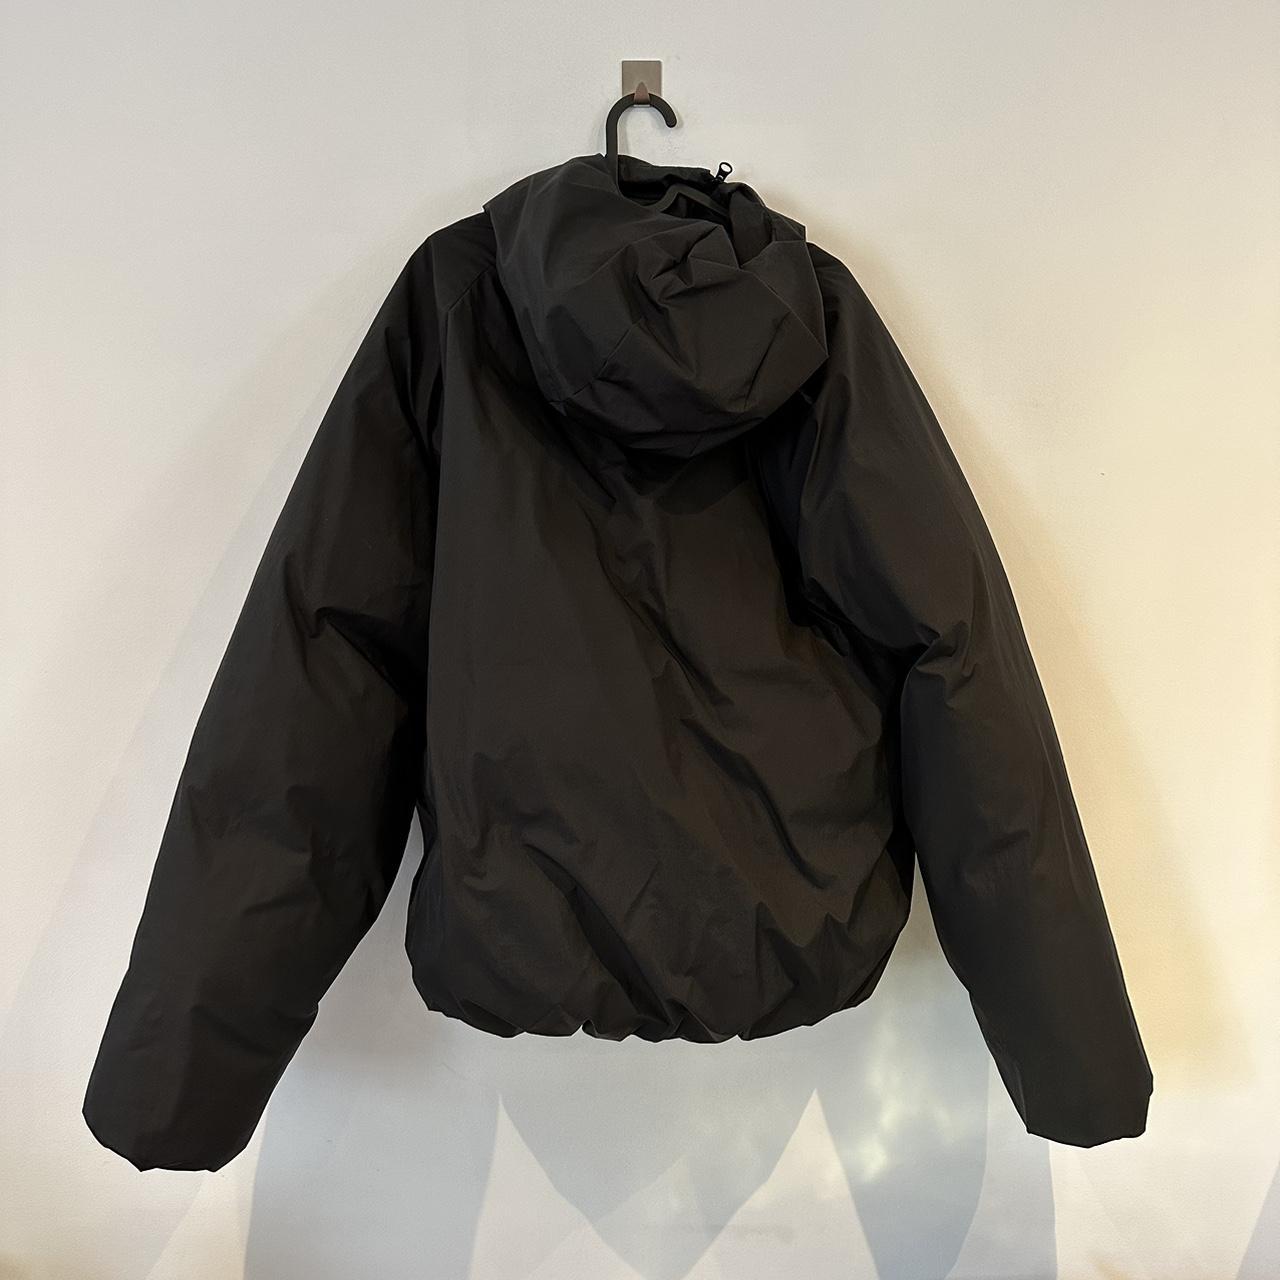 Black PAF puffer jacket Size L Has adjustable... - Depop